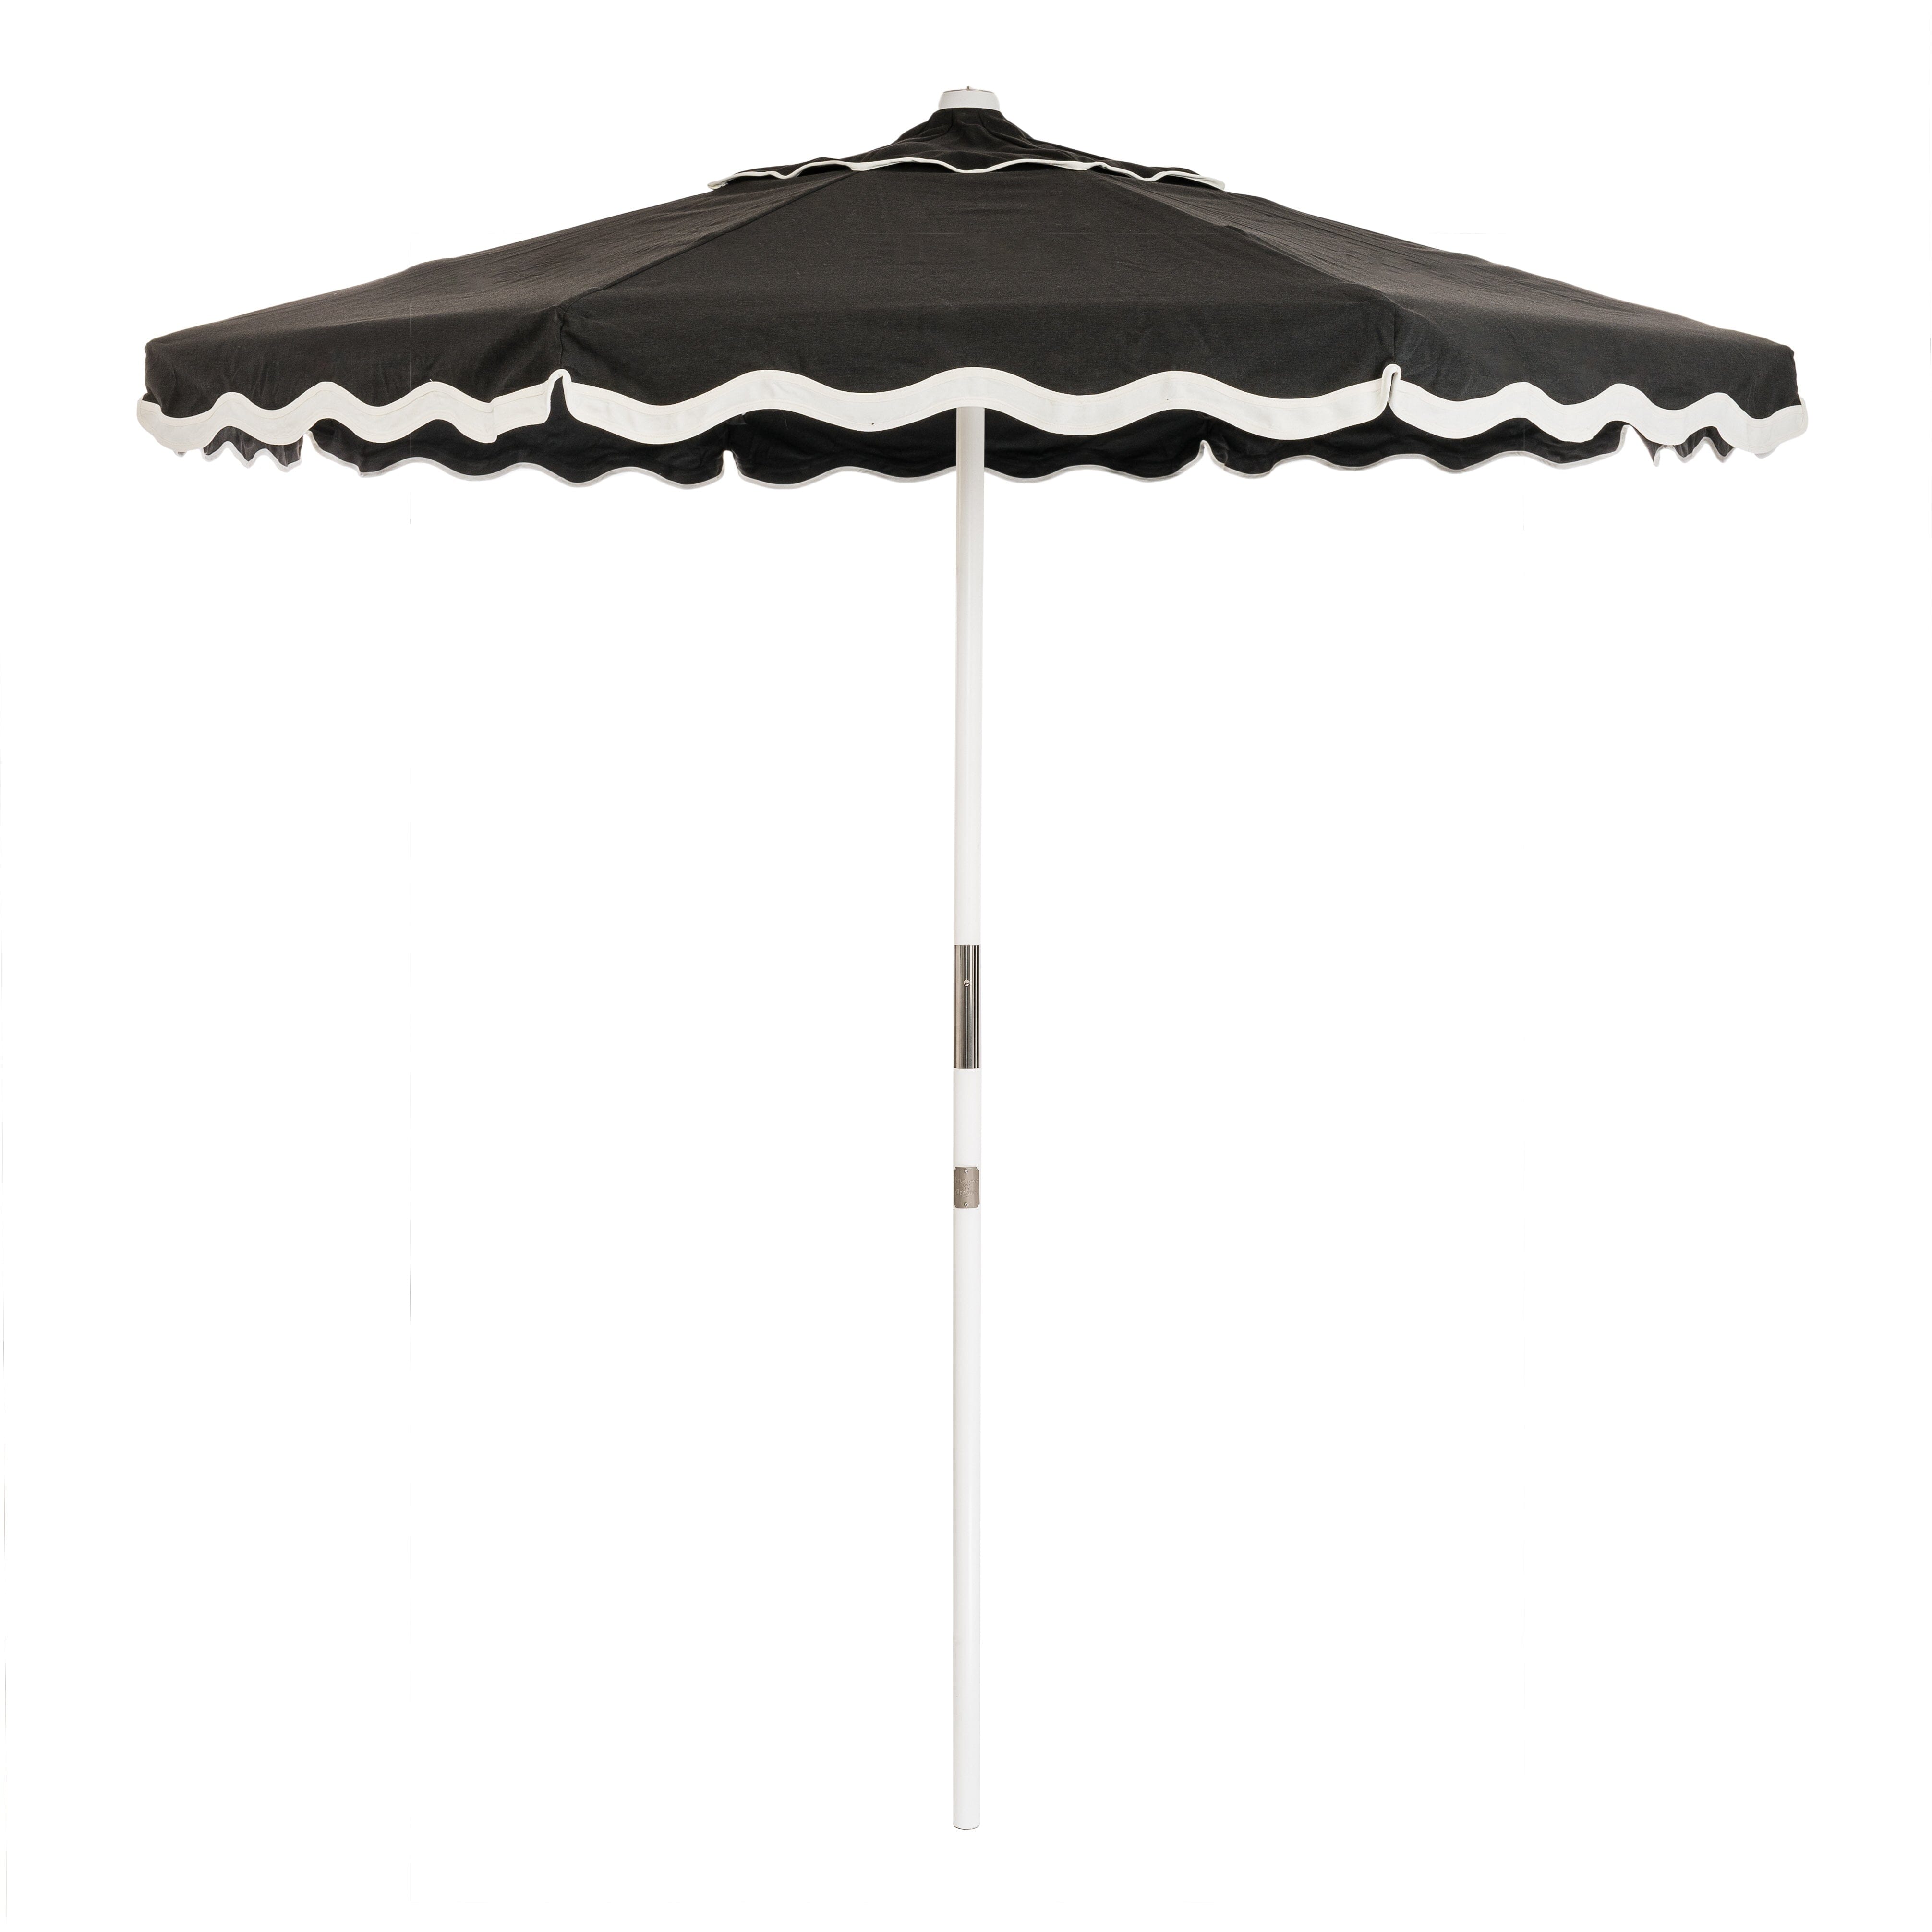 The Market Umbrella - Rivie Black Market Umbrella Business & Pleasure Co Aus 